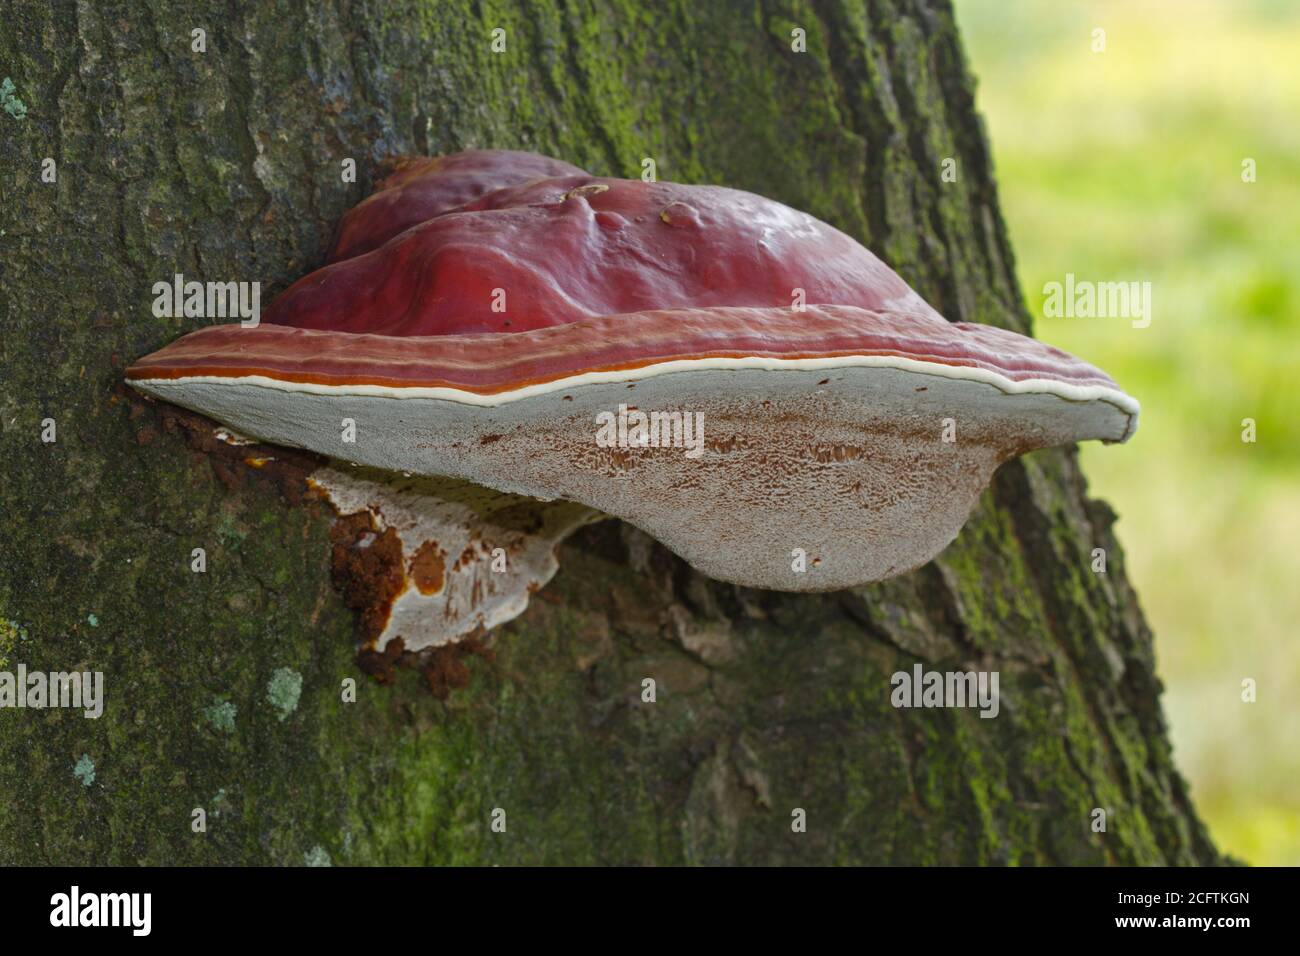 Beau corps fruité brun rougeâtre de Ganoderma lucidum sur un chêne arbre Banque D'Images